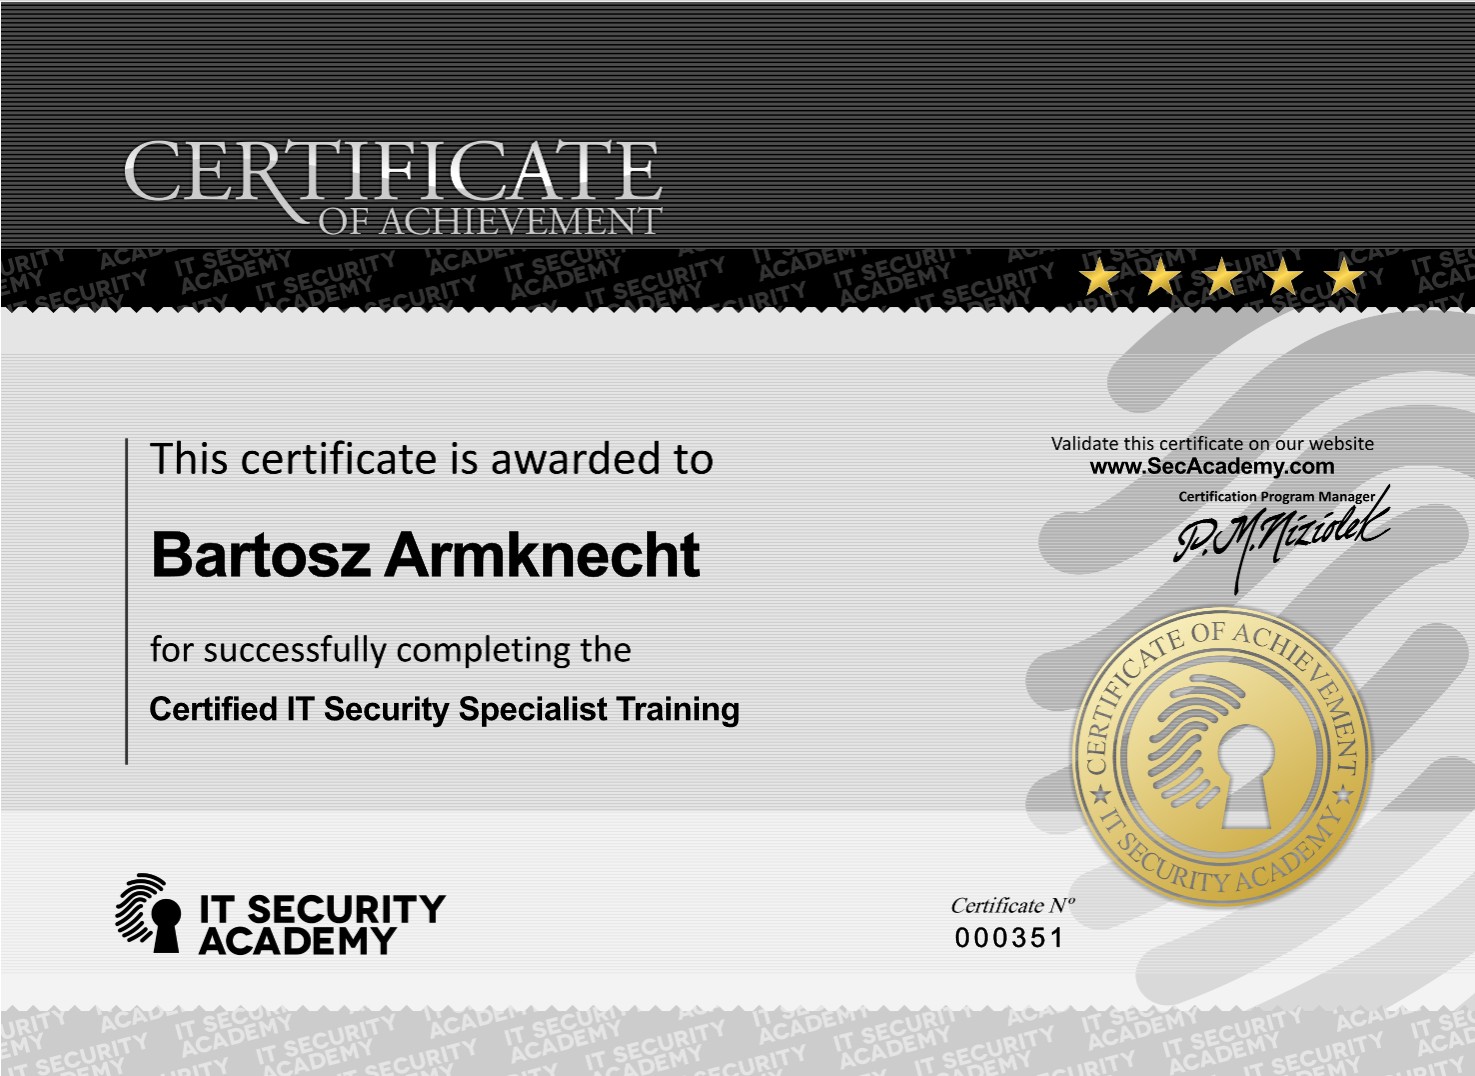 Kancelaria Prawna ADVISER Armknecht & Partners attorneys-at-law | RODO - Ochrona danych - CISS / GDPR - Data protection - Certified IT Security Specialist 